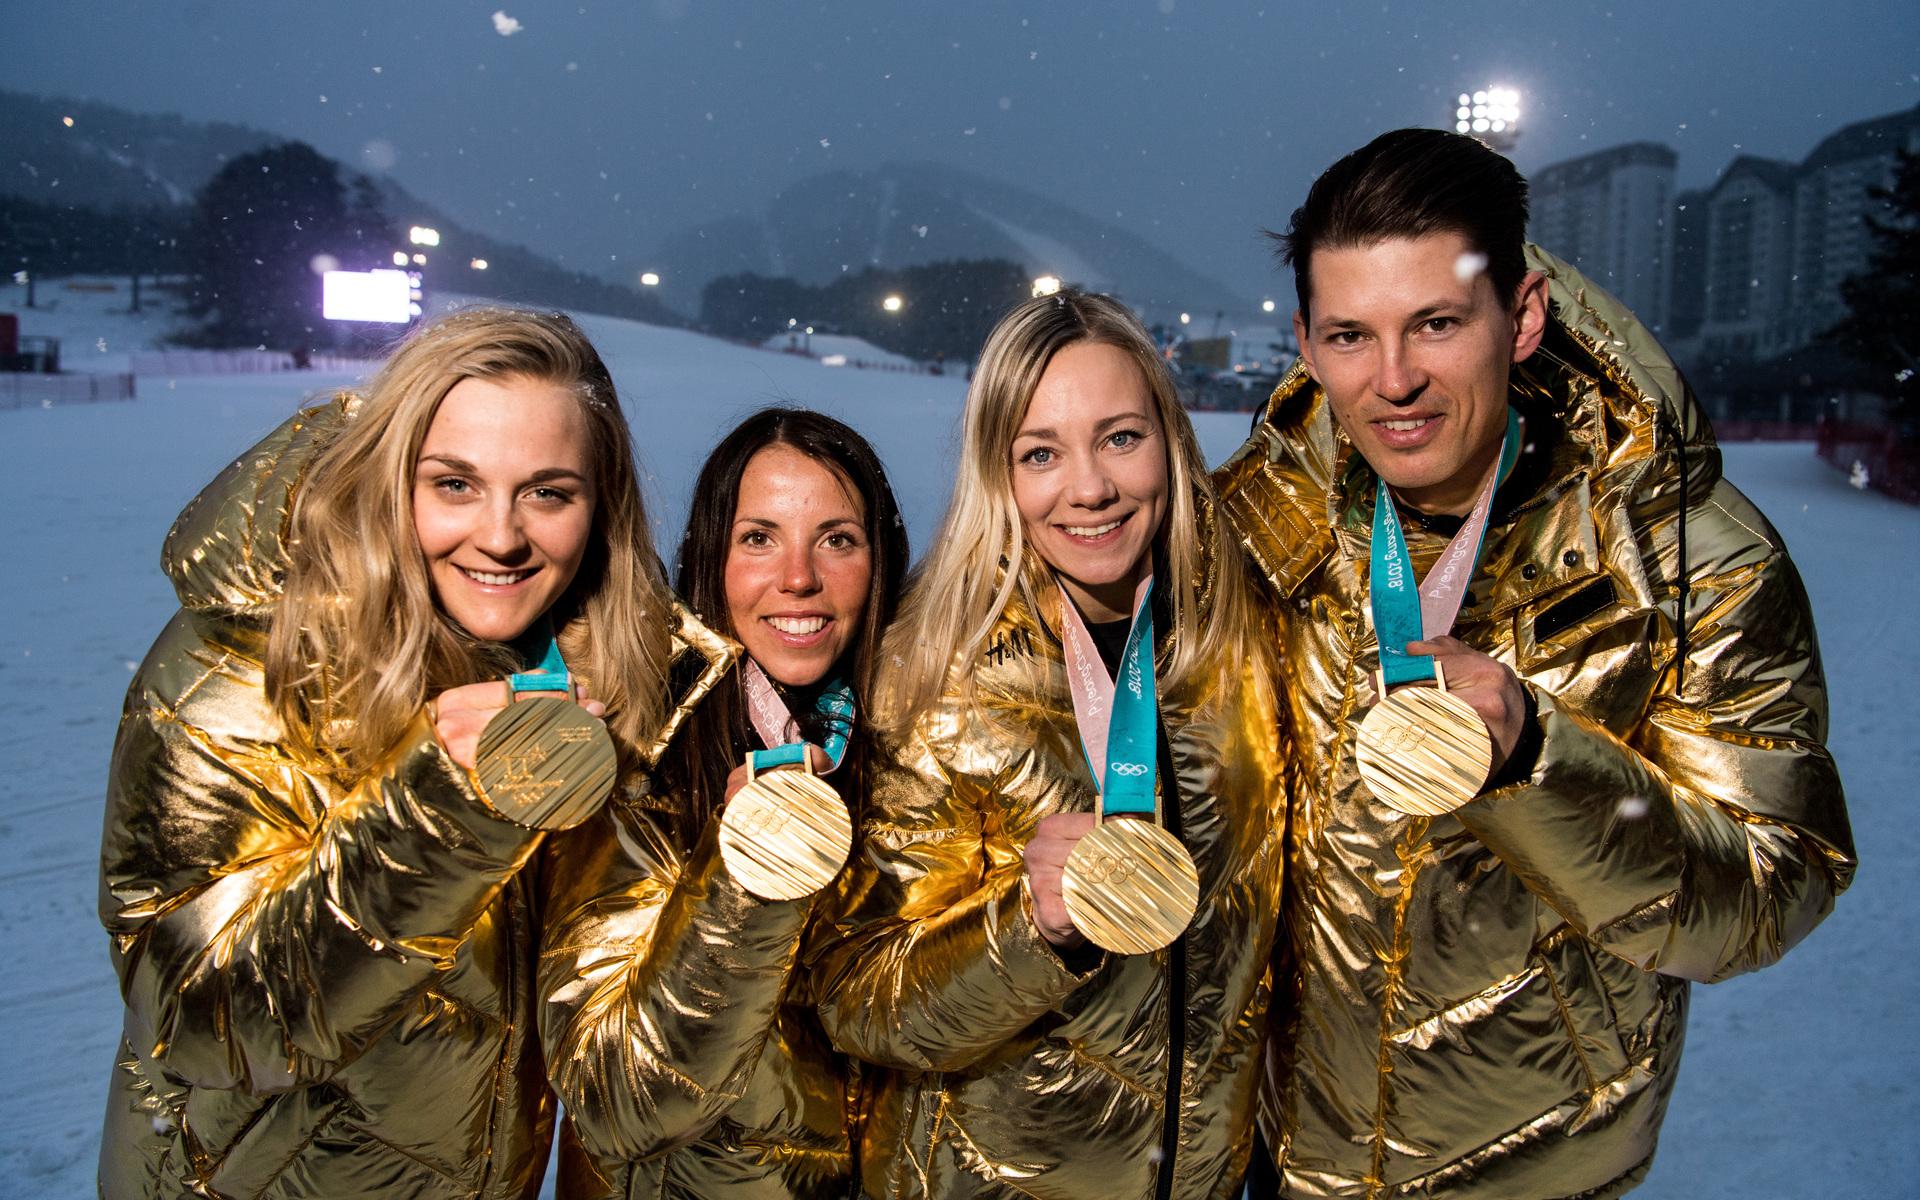 Här visar Charlotte Kalla upp guldmedaljen tillsammans med några andra guldmedaljörer från OS 2018. Stina Nilsson, Frida Hansdotter och Andre Myhrer nådde också högst upp på pallen under spelen i Sydkorea. 